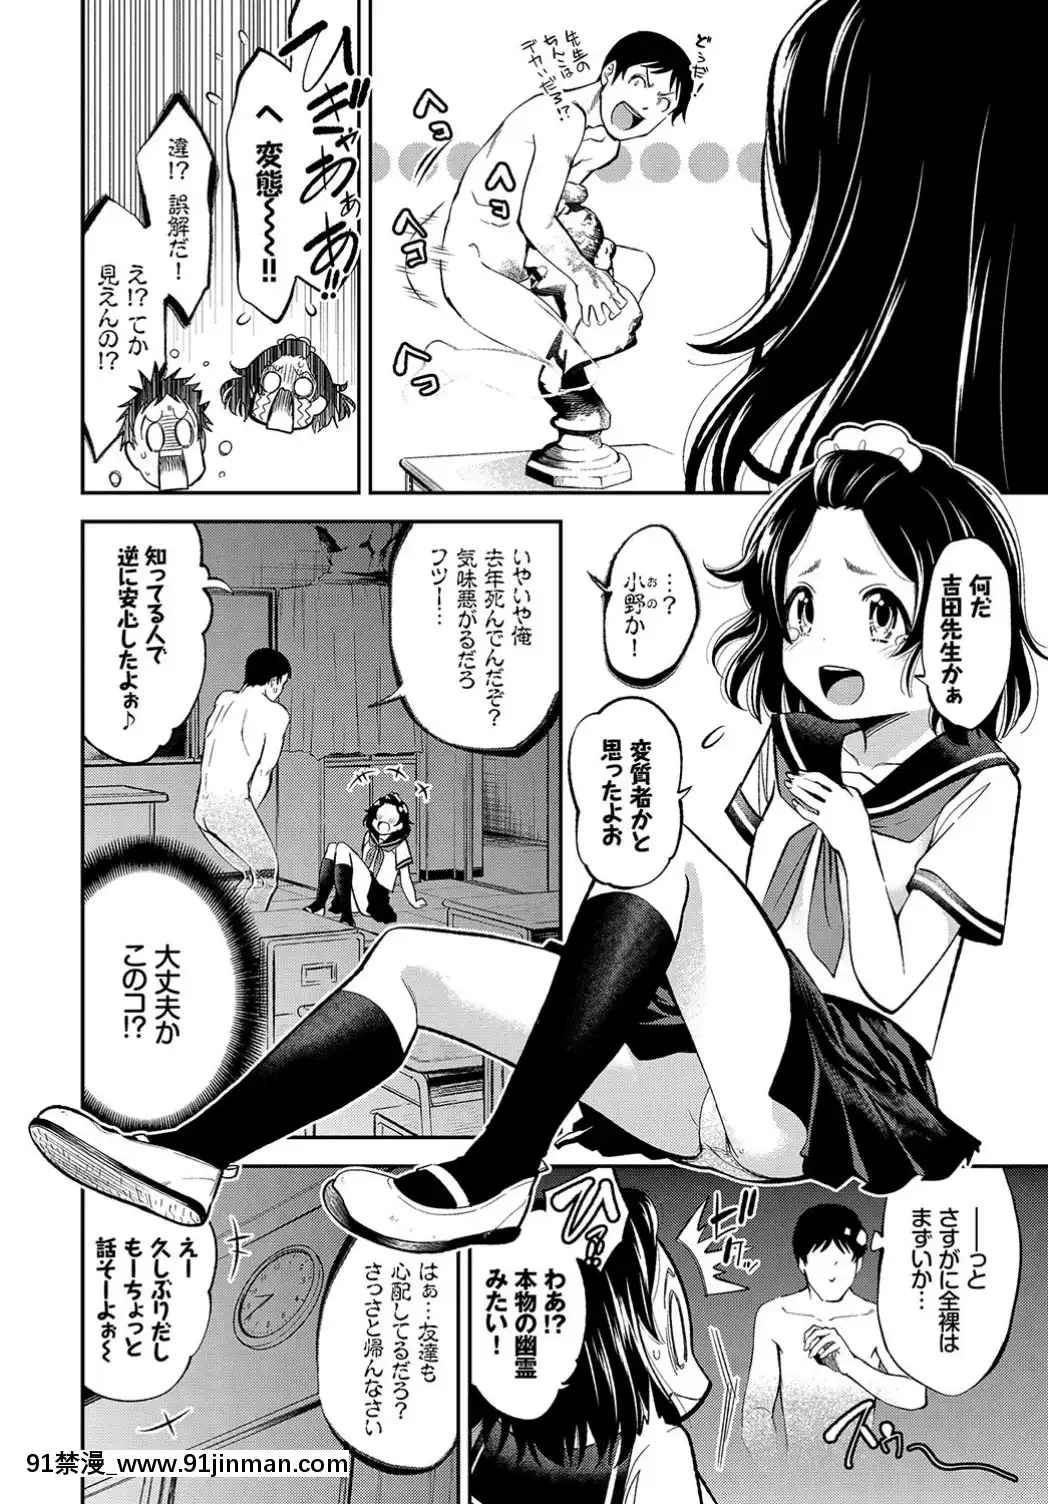 (Truyện tranh Seinen) [Khác] COMICBAVEL 2019 tháng 6 [Kỹ thuật số]【truyện tranh doremon bong chay】